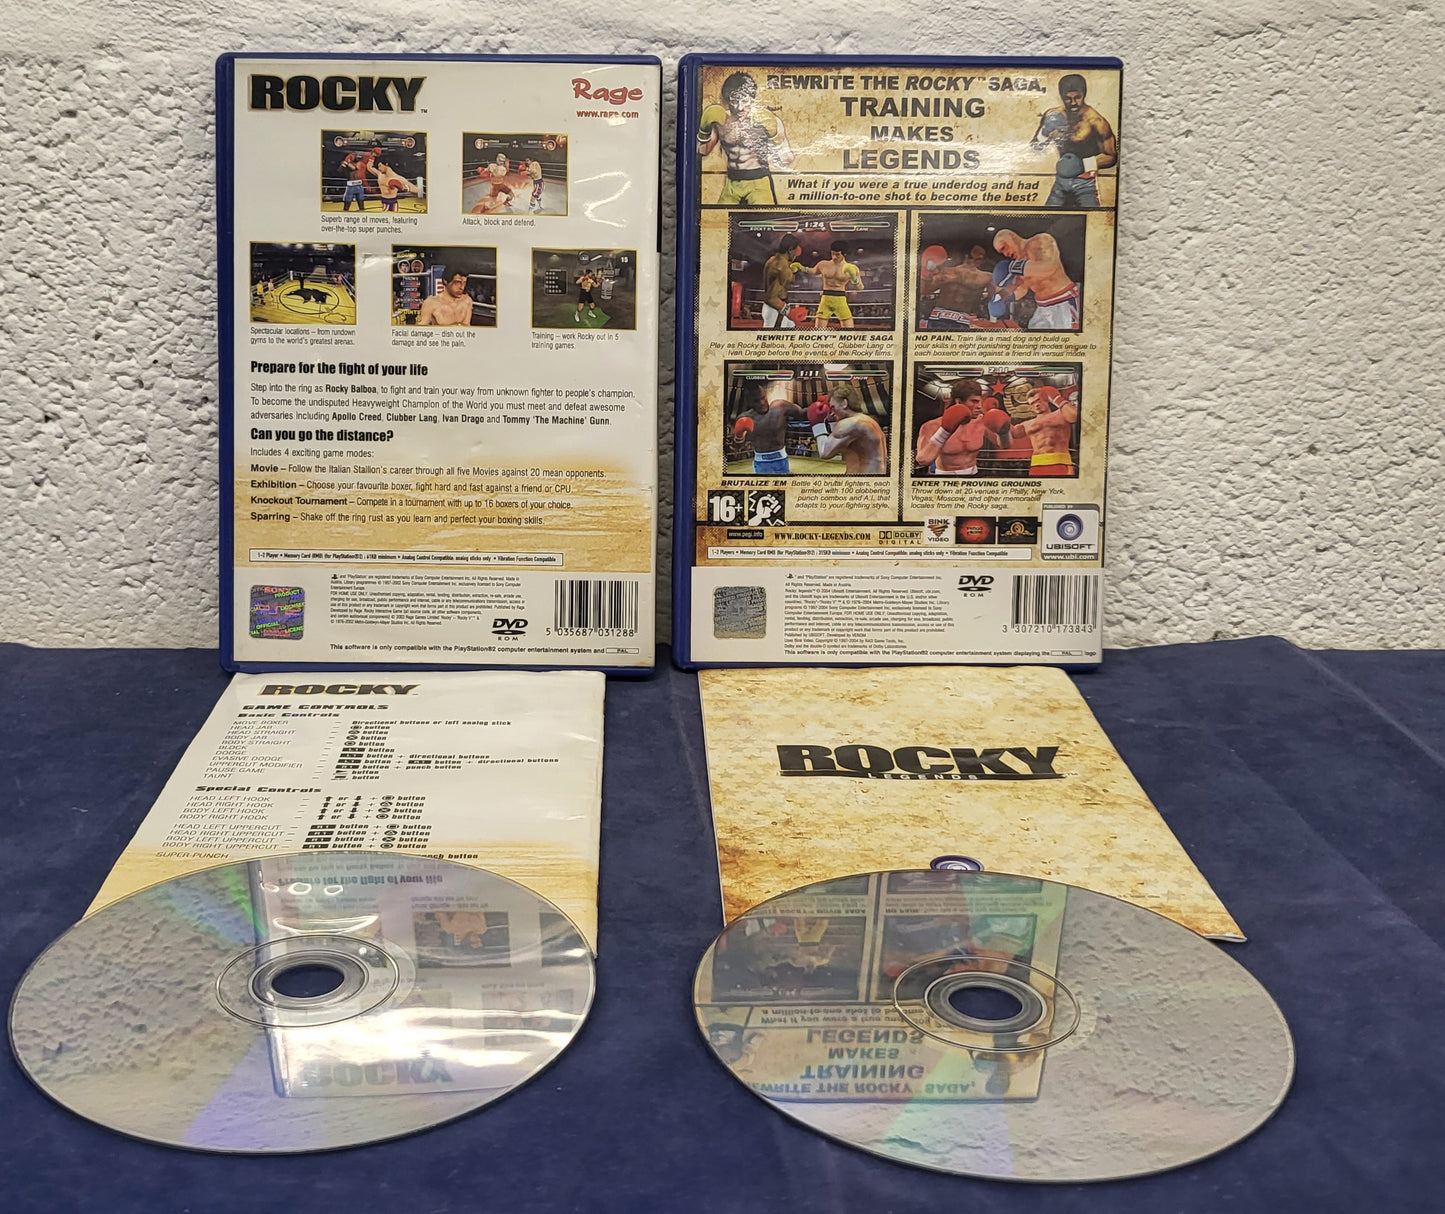 Rocky & Rocky Legends Sony Playstation 2 (PS2)